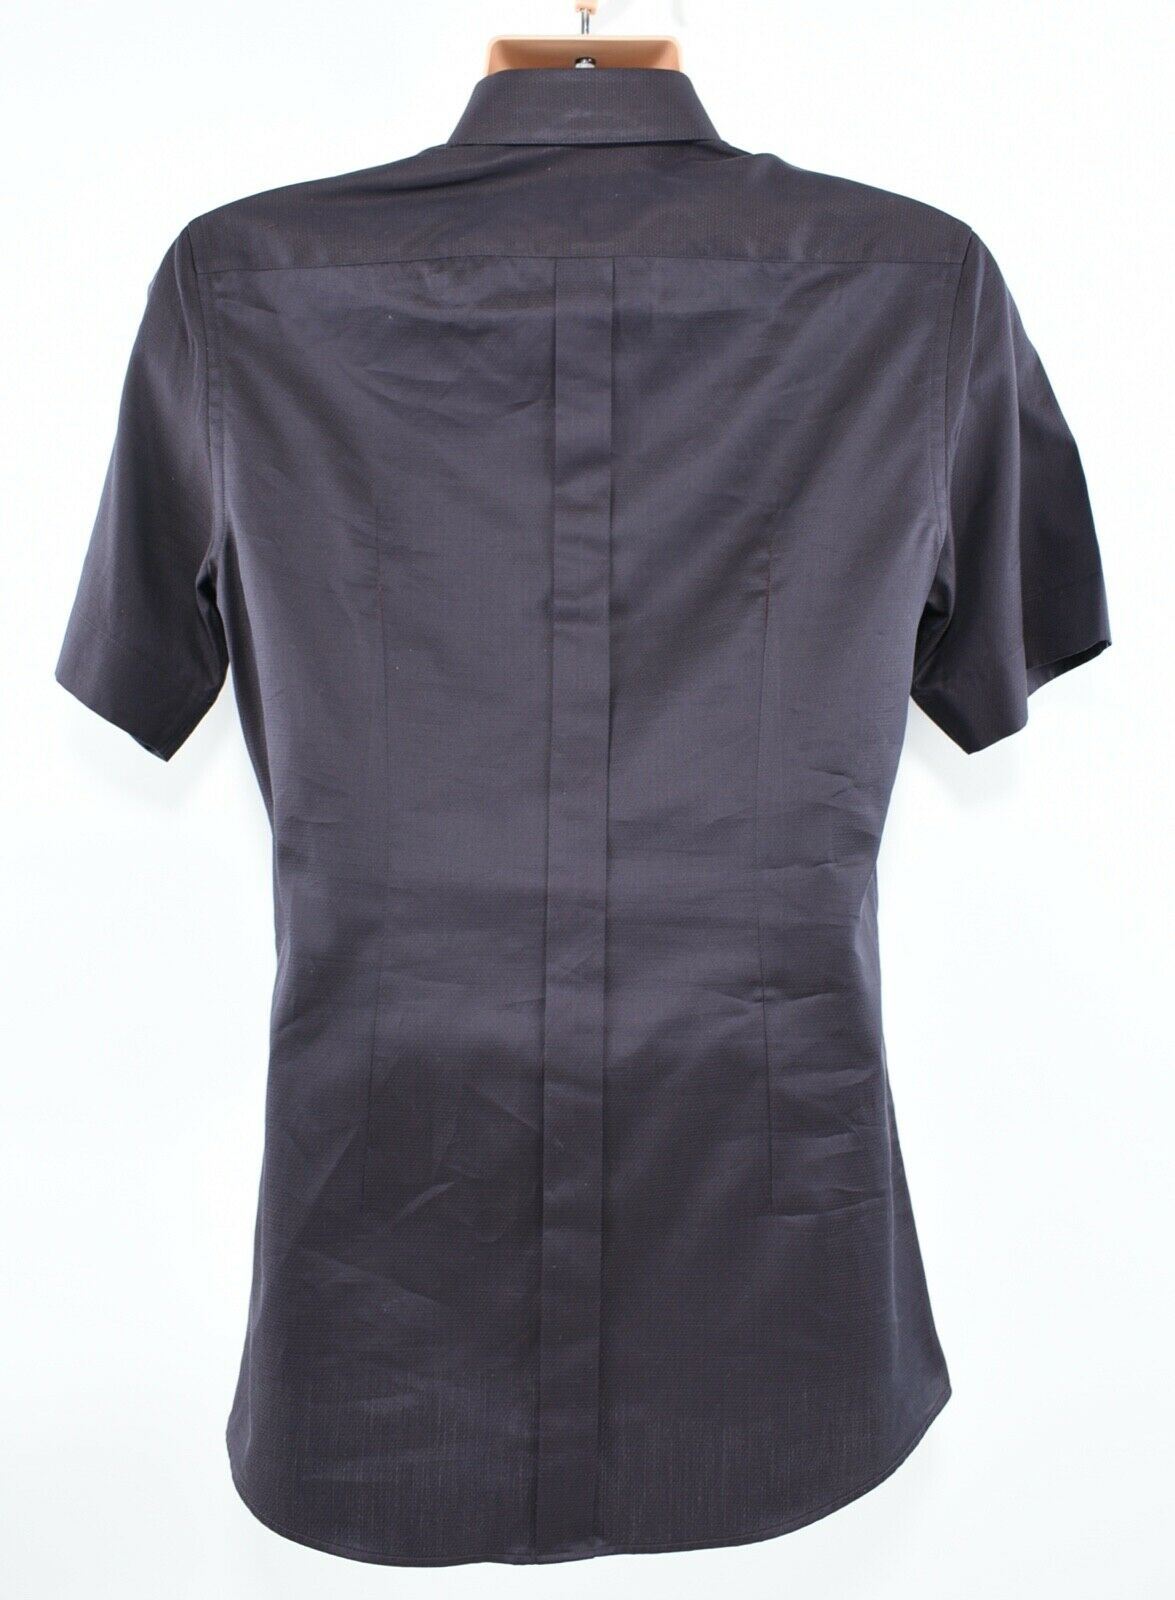 DOLCE & GABBANA Men's Short Sleeve Shirt, SLIM FIT, Deep Brown, collar 15.5"